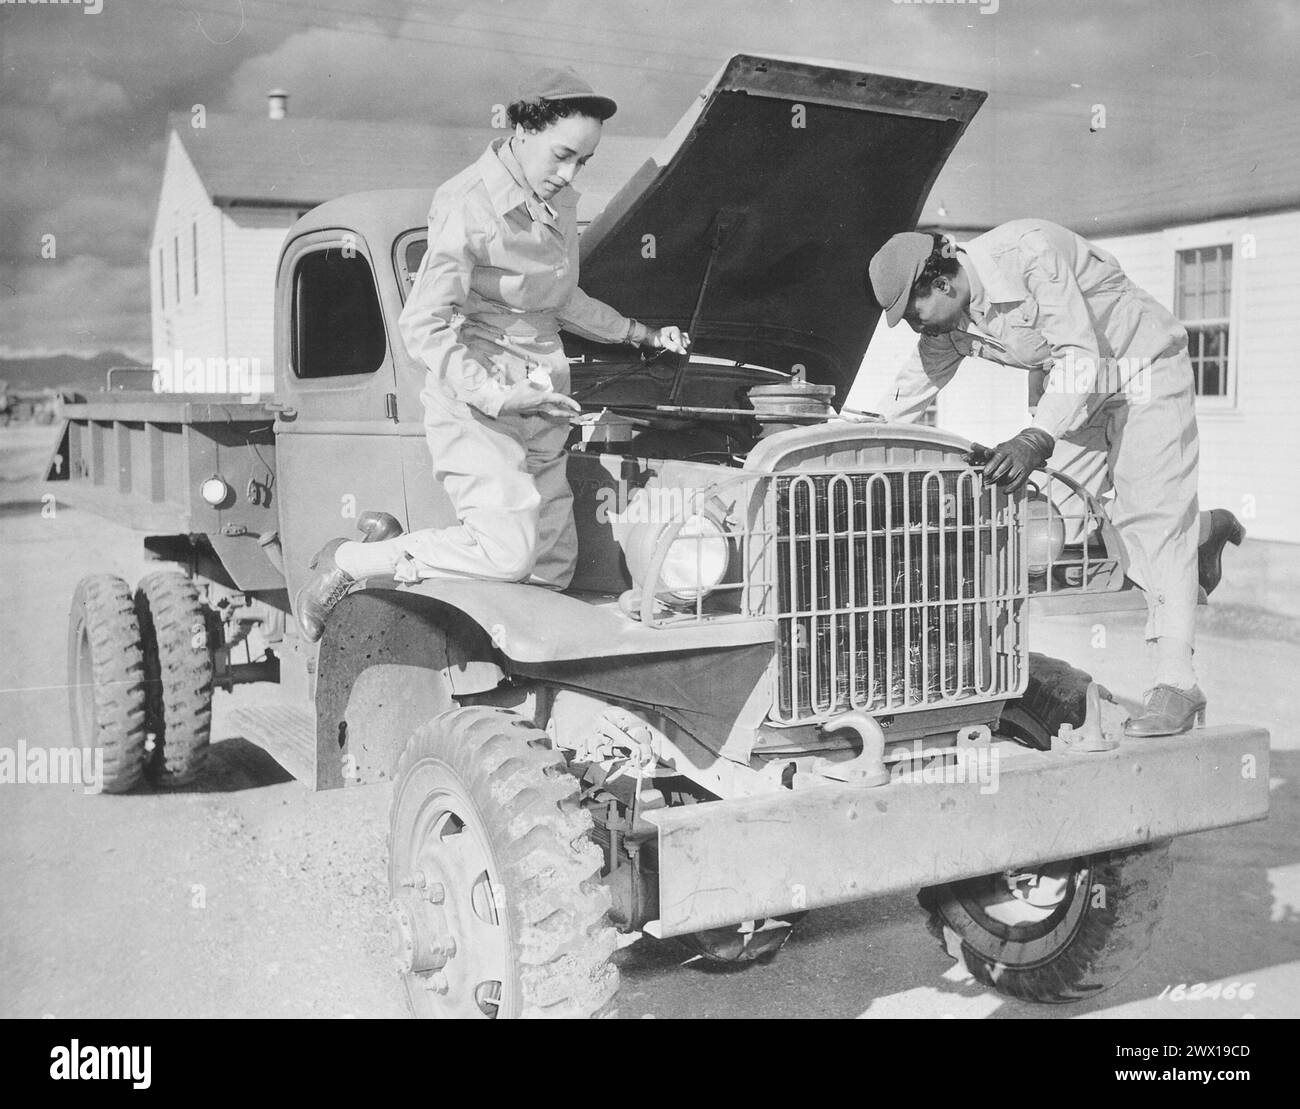 Gli ausiliari Ruth Wade e Lucille Mayo (da sinistra a destra) dimostrano ulteriormente la loro capacità di riparare i camion come insegnarono loro durante il periodo di lavorazione a Fort Des Moines e messi in pratica a Fort Huachuca, Arizona CA. 1942 Foto Stock